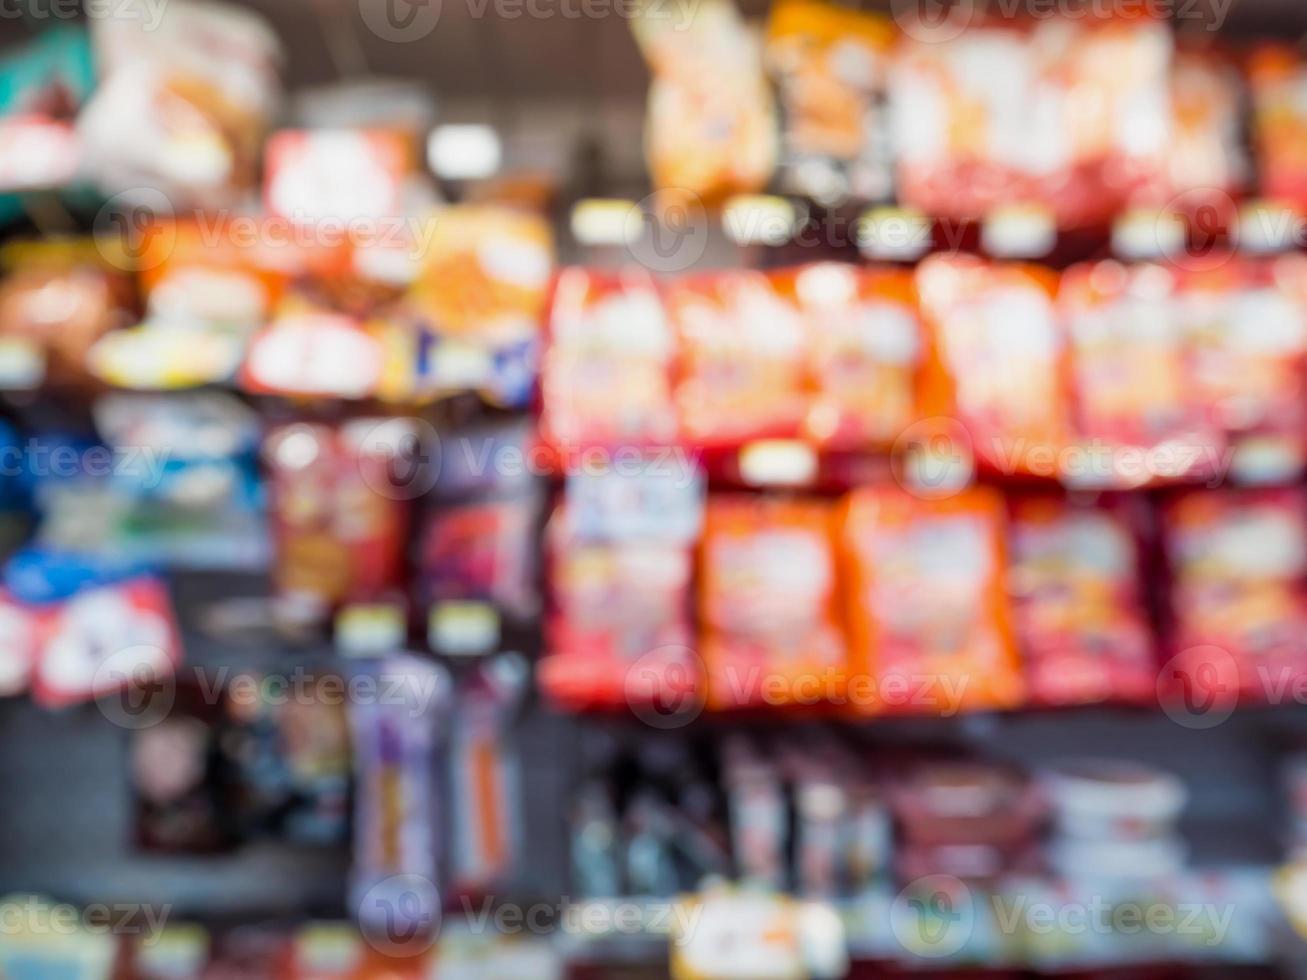 brouiller les étagères des produits de collations alimentaires dans le dépanneur du supermarché pour le fond photo